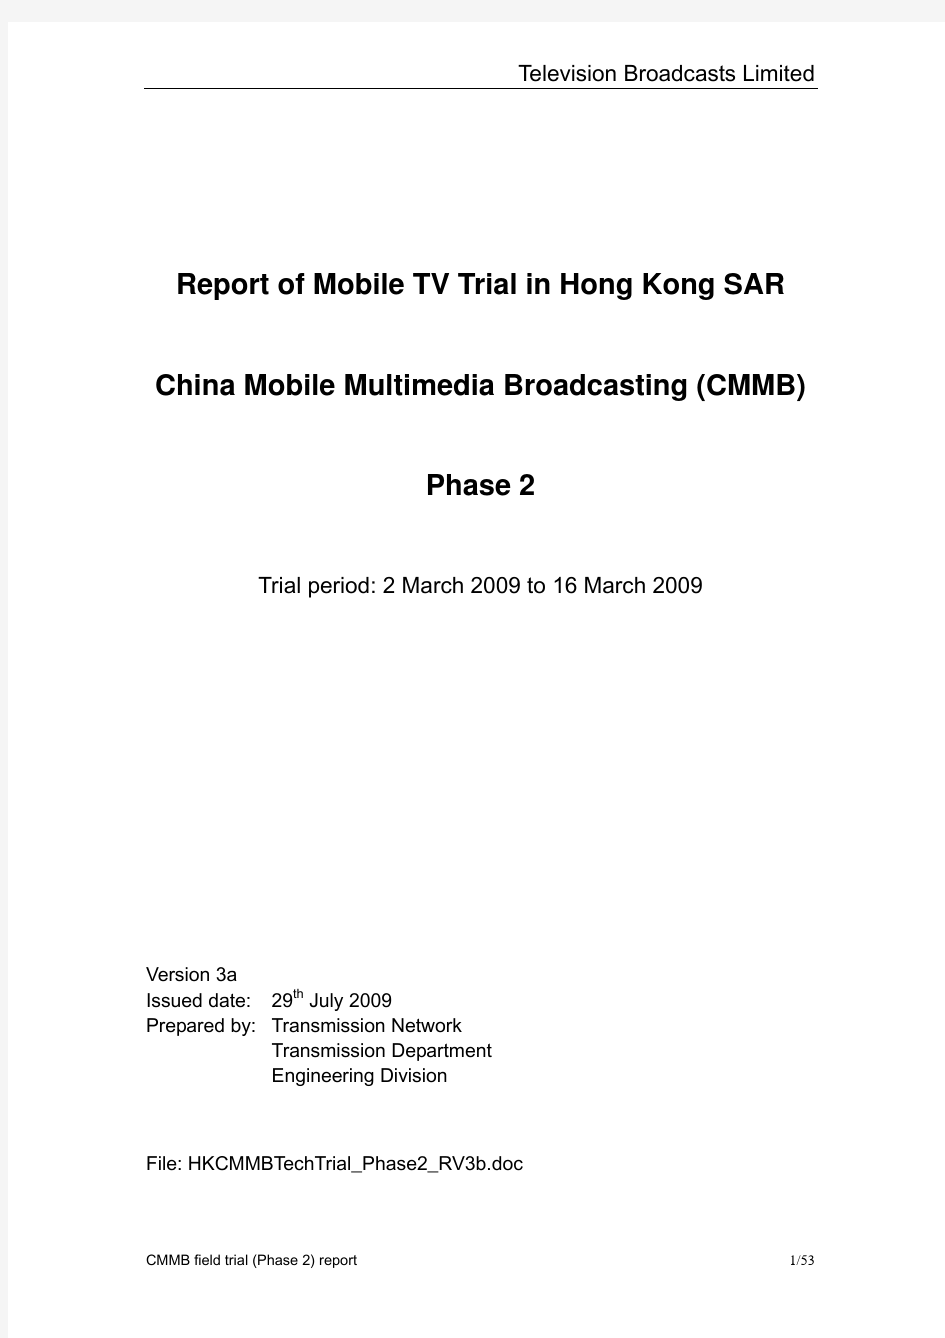 电视广播有限公司的第二阶段CMMB 流动电视技术测试报告